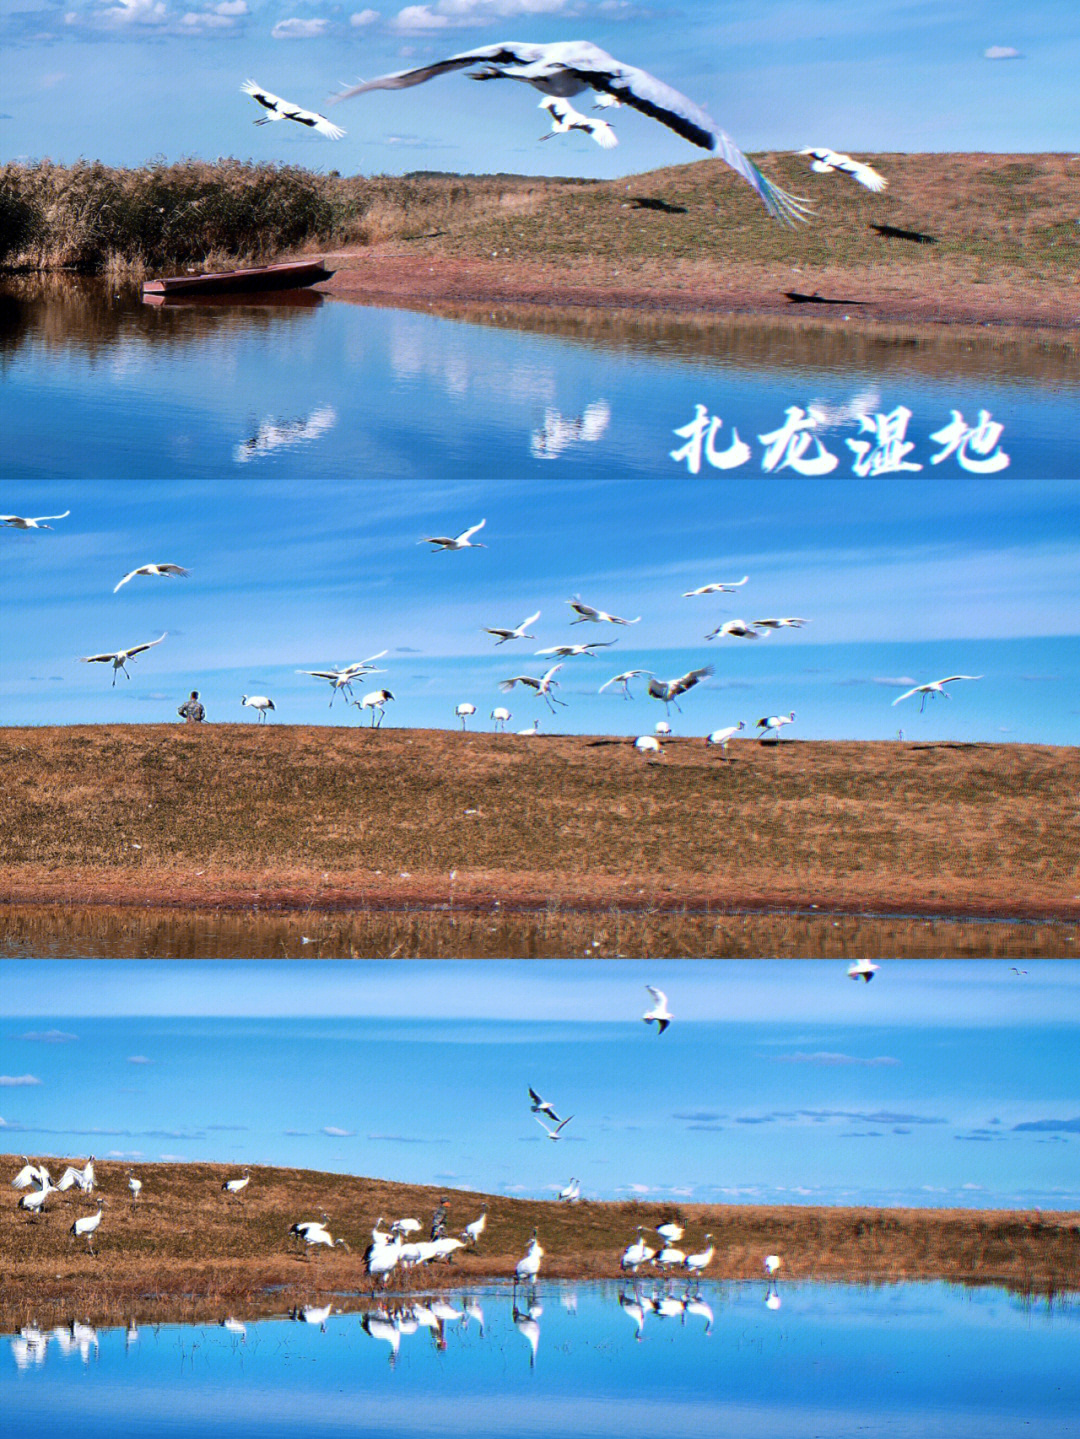 齐齐哈尔丹顶鹤扎龙湿地自然保护区